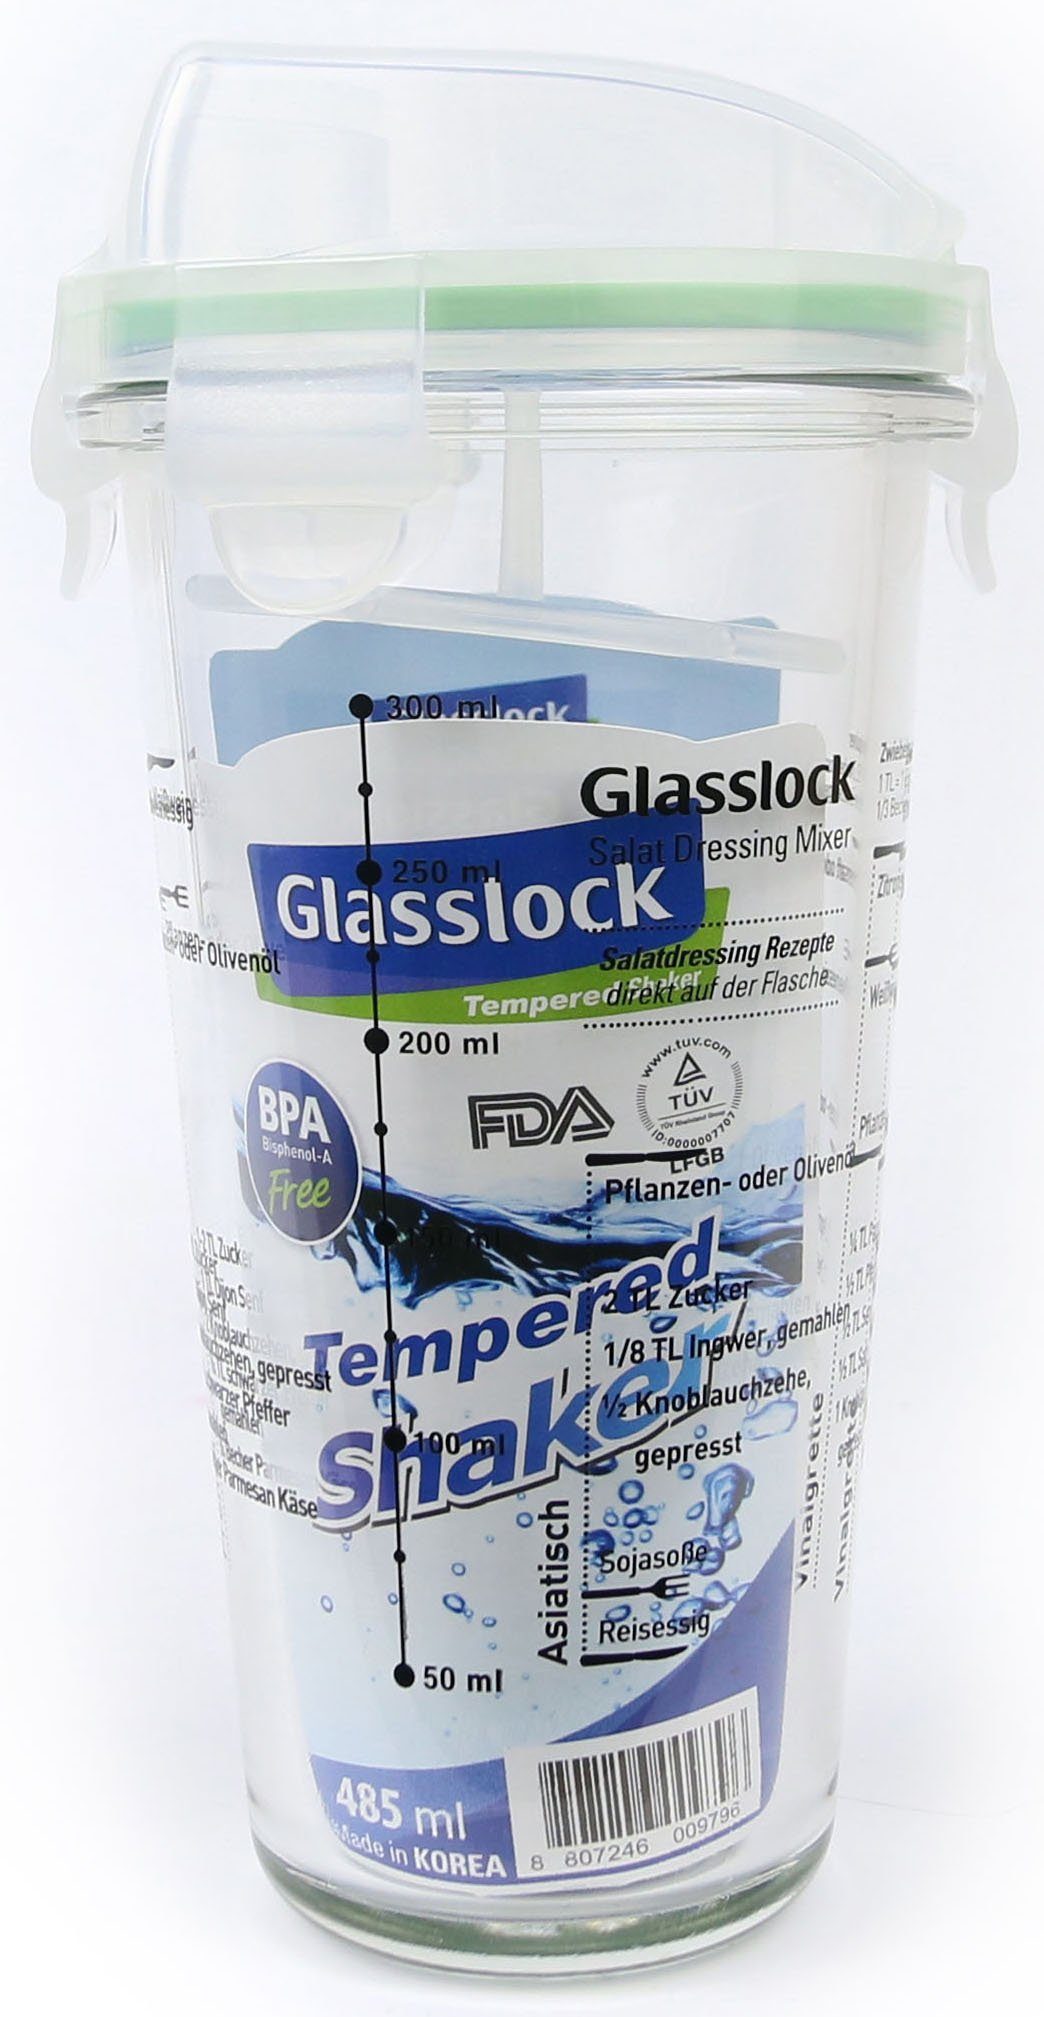 Glasslock Dressing Shaker, 450 (Cocktail ml Shaker), Glas